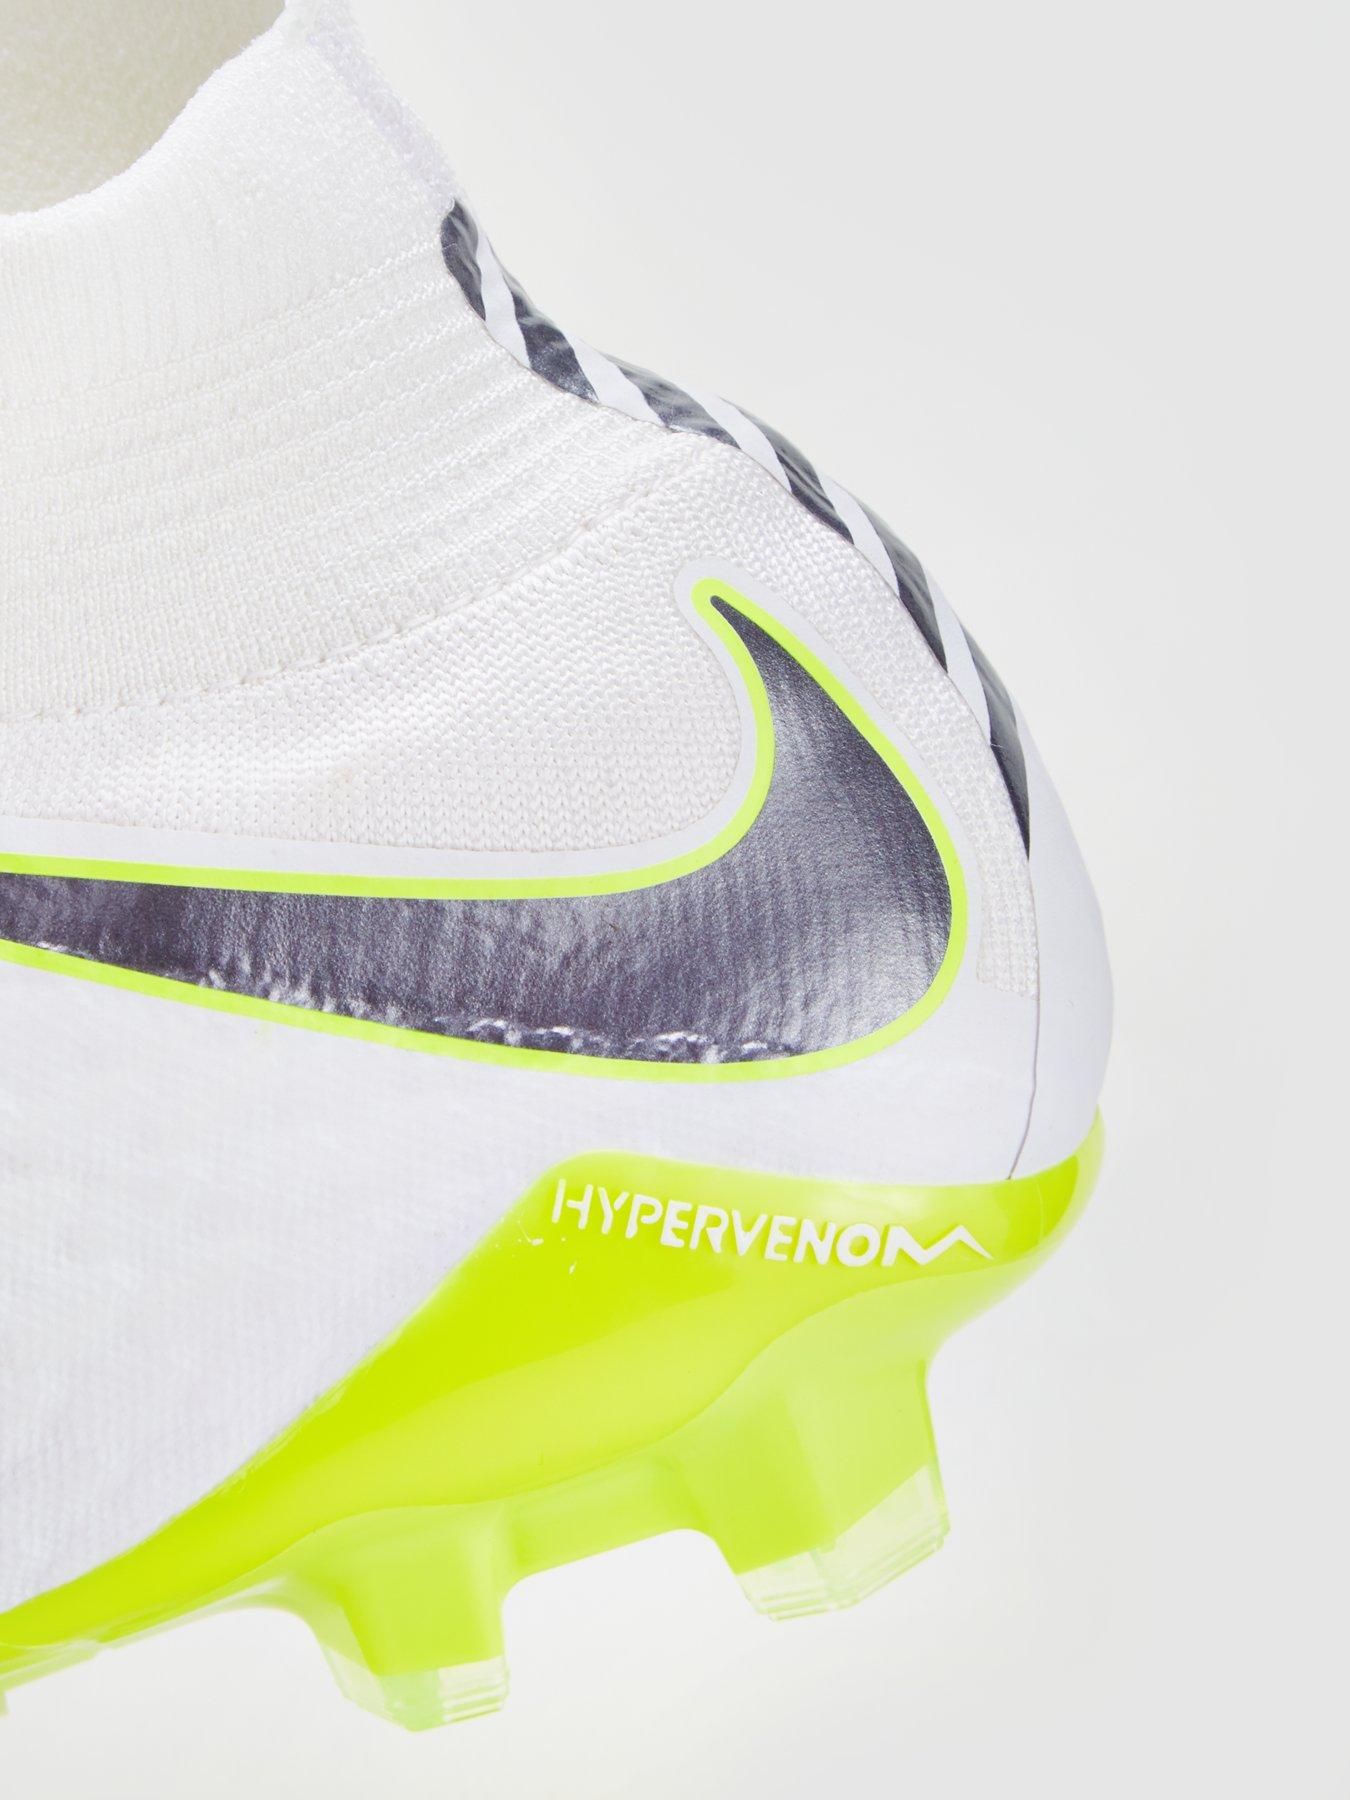 Nike Hypervenom Phelon 3 Fg al miglior prezzo Trovaprezzi